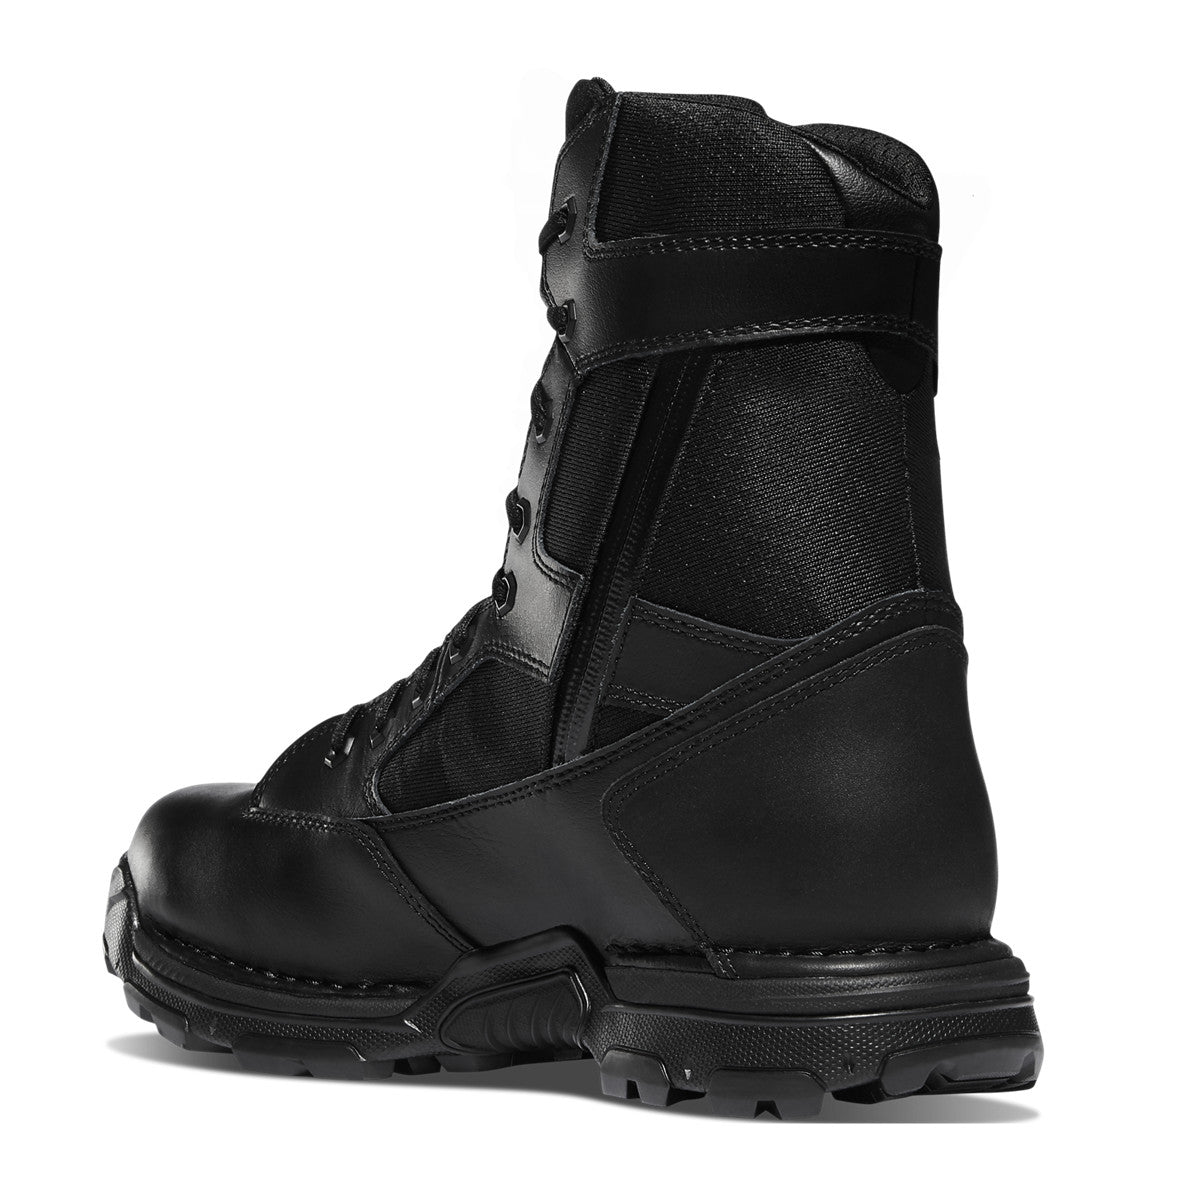 Danner Men's Striker Bolt 8" Side Zip WP Duty Boot - Black - 26634  - Overlook Boots